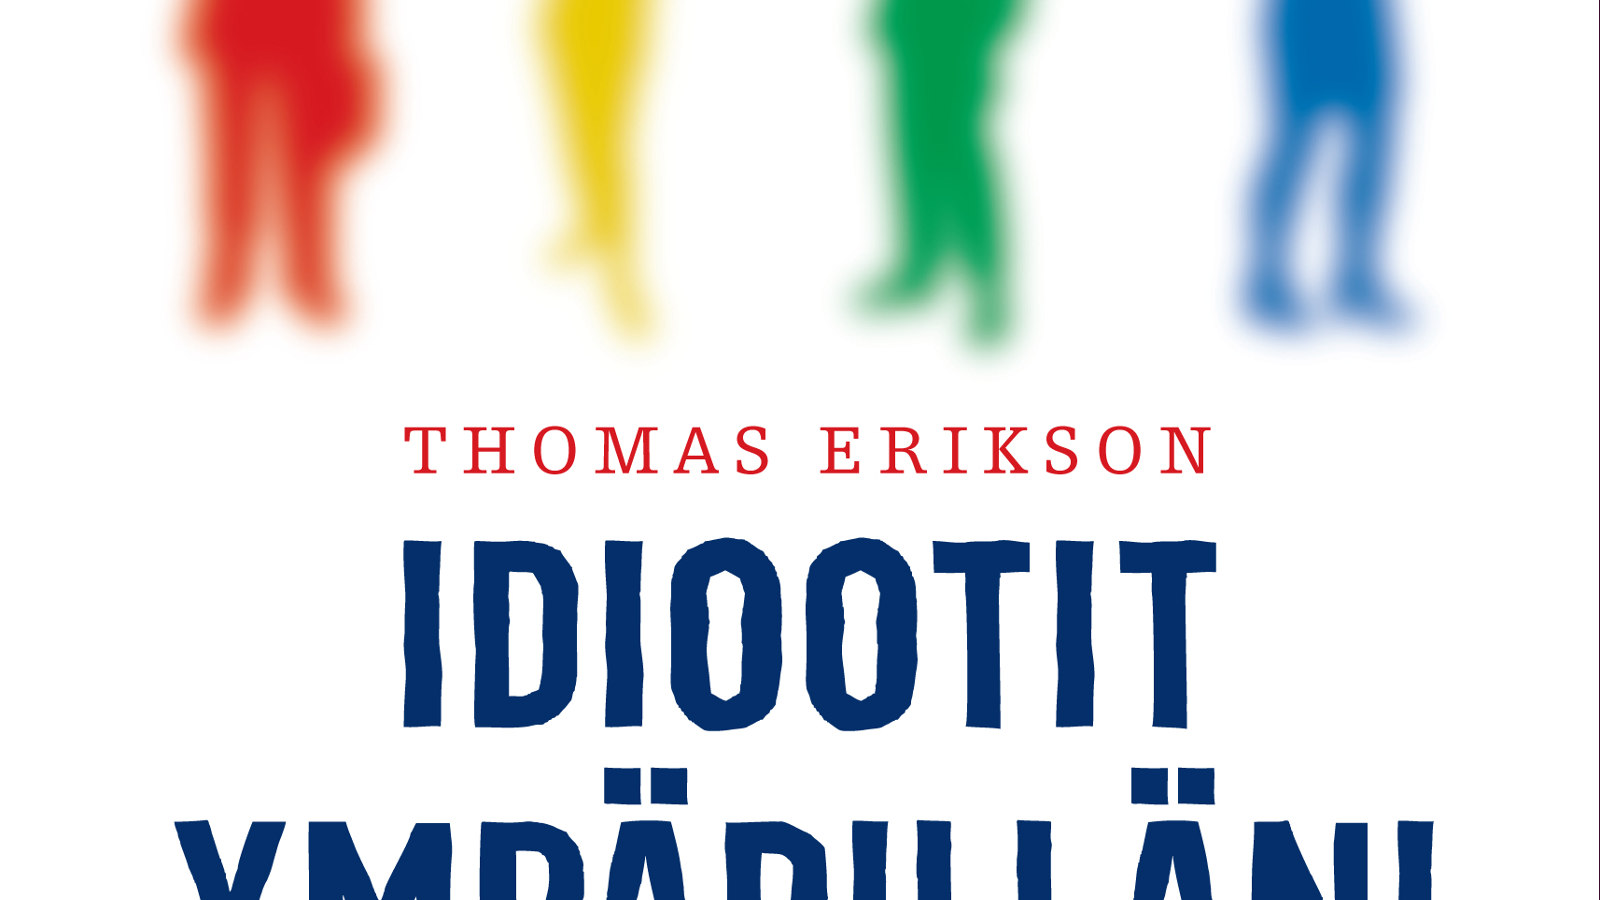 Kuvassa on keskiosaa Thomas Eriksonin kirjan kannesta Idiootit ympärilläni.  Pohja on valkoinen ja siinä on ylhäällä jalkojan punaisesta, keltaisesta, vihreästä ja sinisestä ihmishahmosta, jotka ovat hieman himmeitä.  Keskellä on tekstinä kirjailijan nimi Thomas Erikson pienemmillä ohuilla kirjaimilla ja Idiootit isoilla paksuilla kirjaimilla sekä ympärilläni -sanasta yläosat.